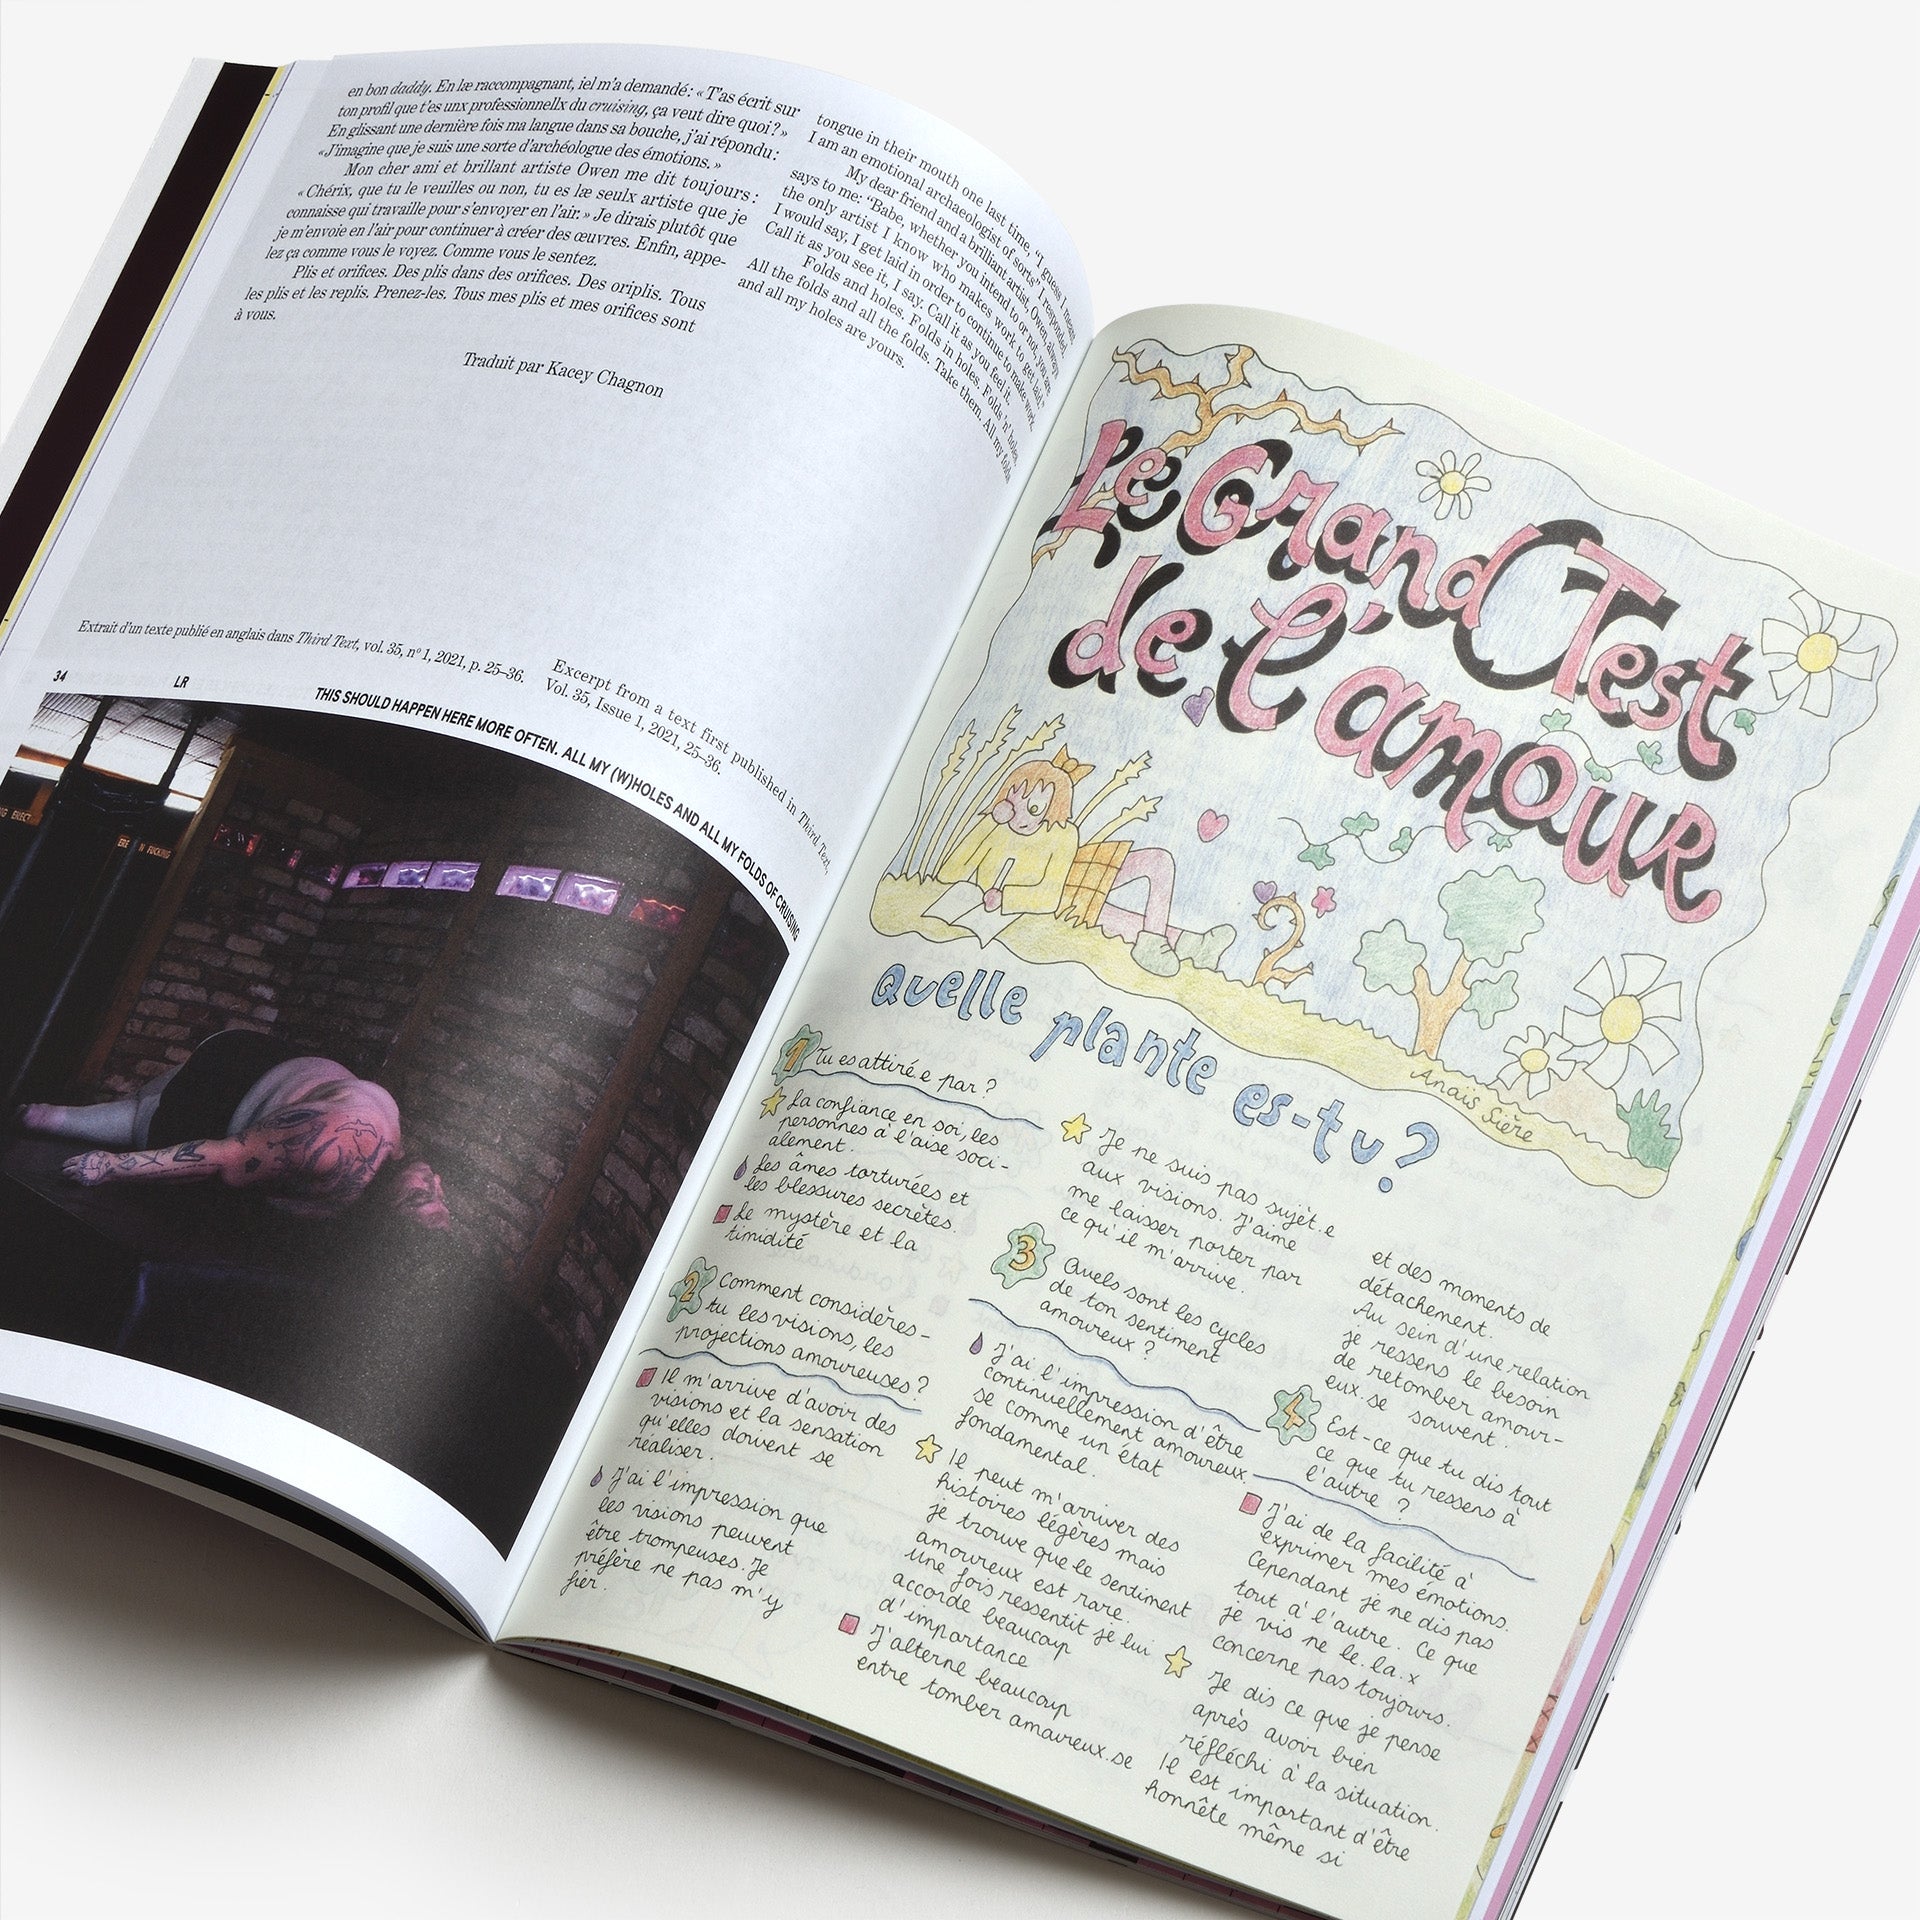 P L S – The magazine of the Palais de Tokyo #36